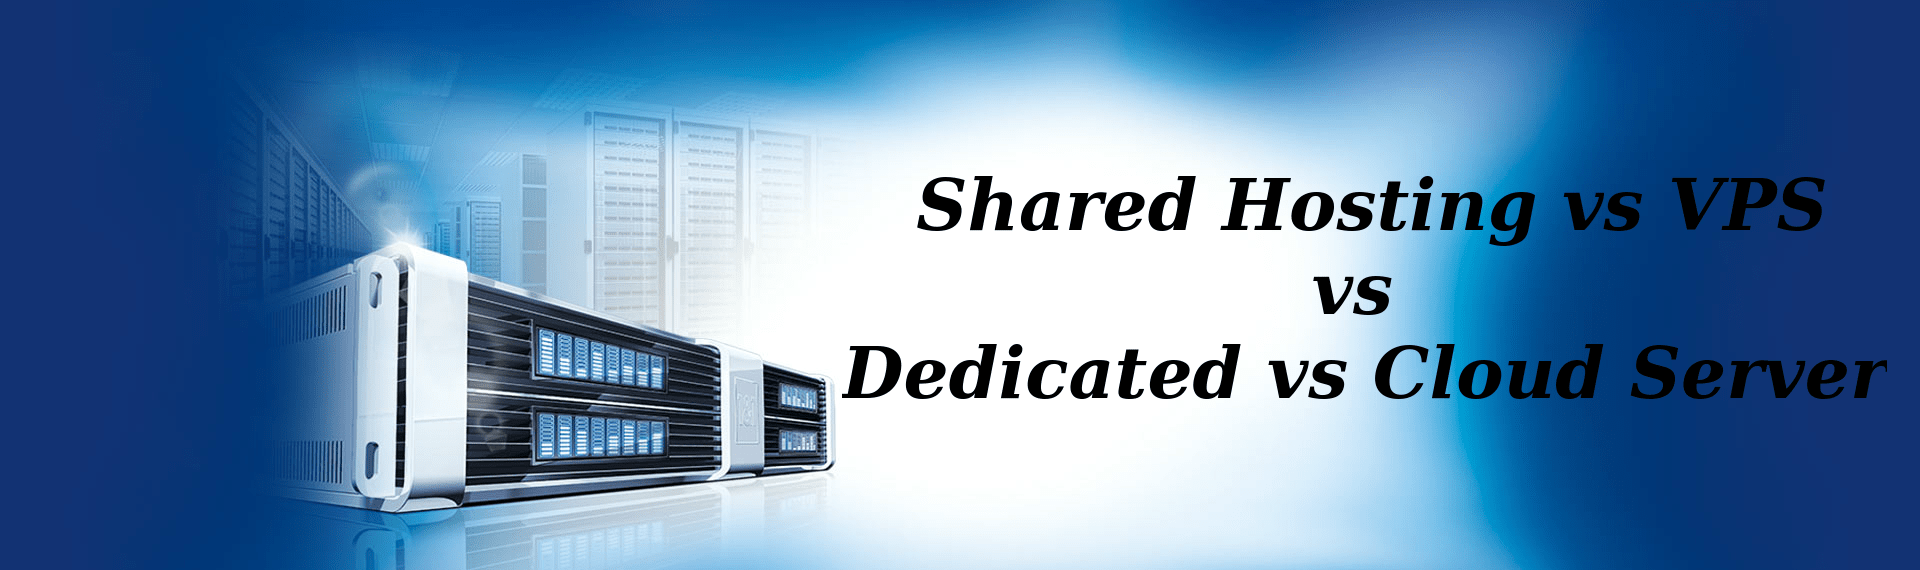 Shared Hosting vs VPS vs Dedicated Server vs Cloud